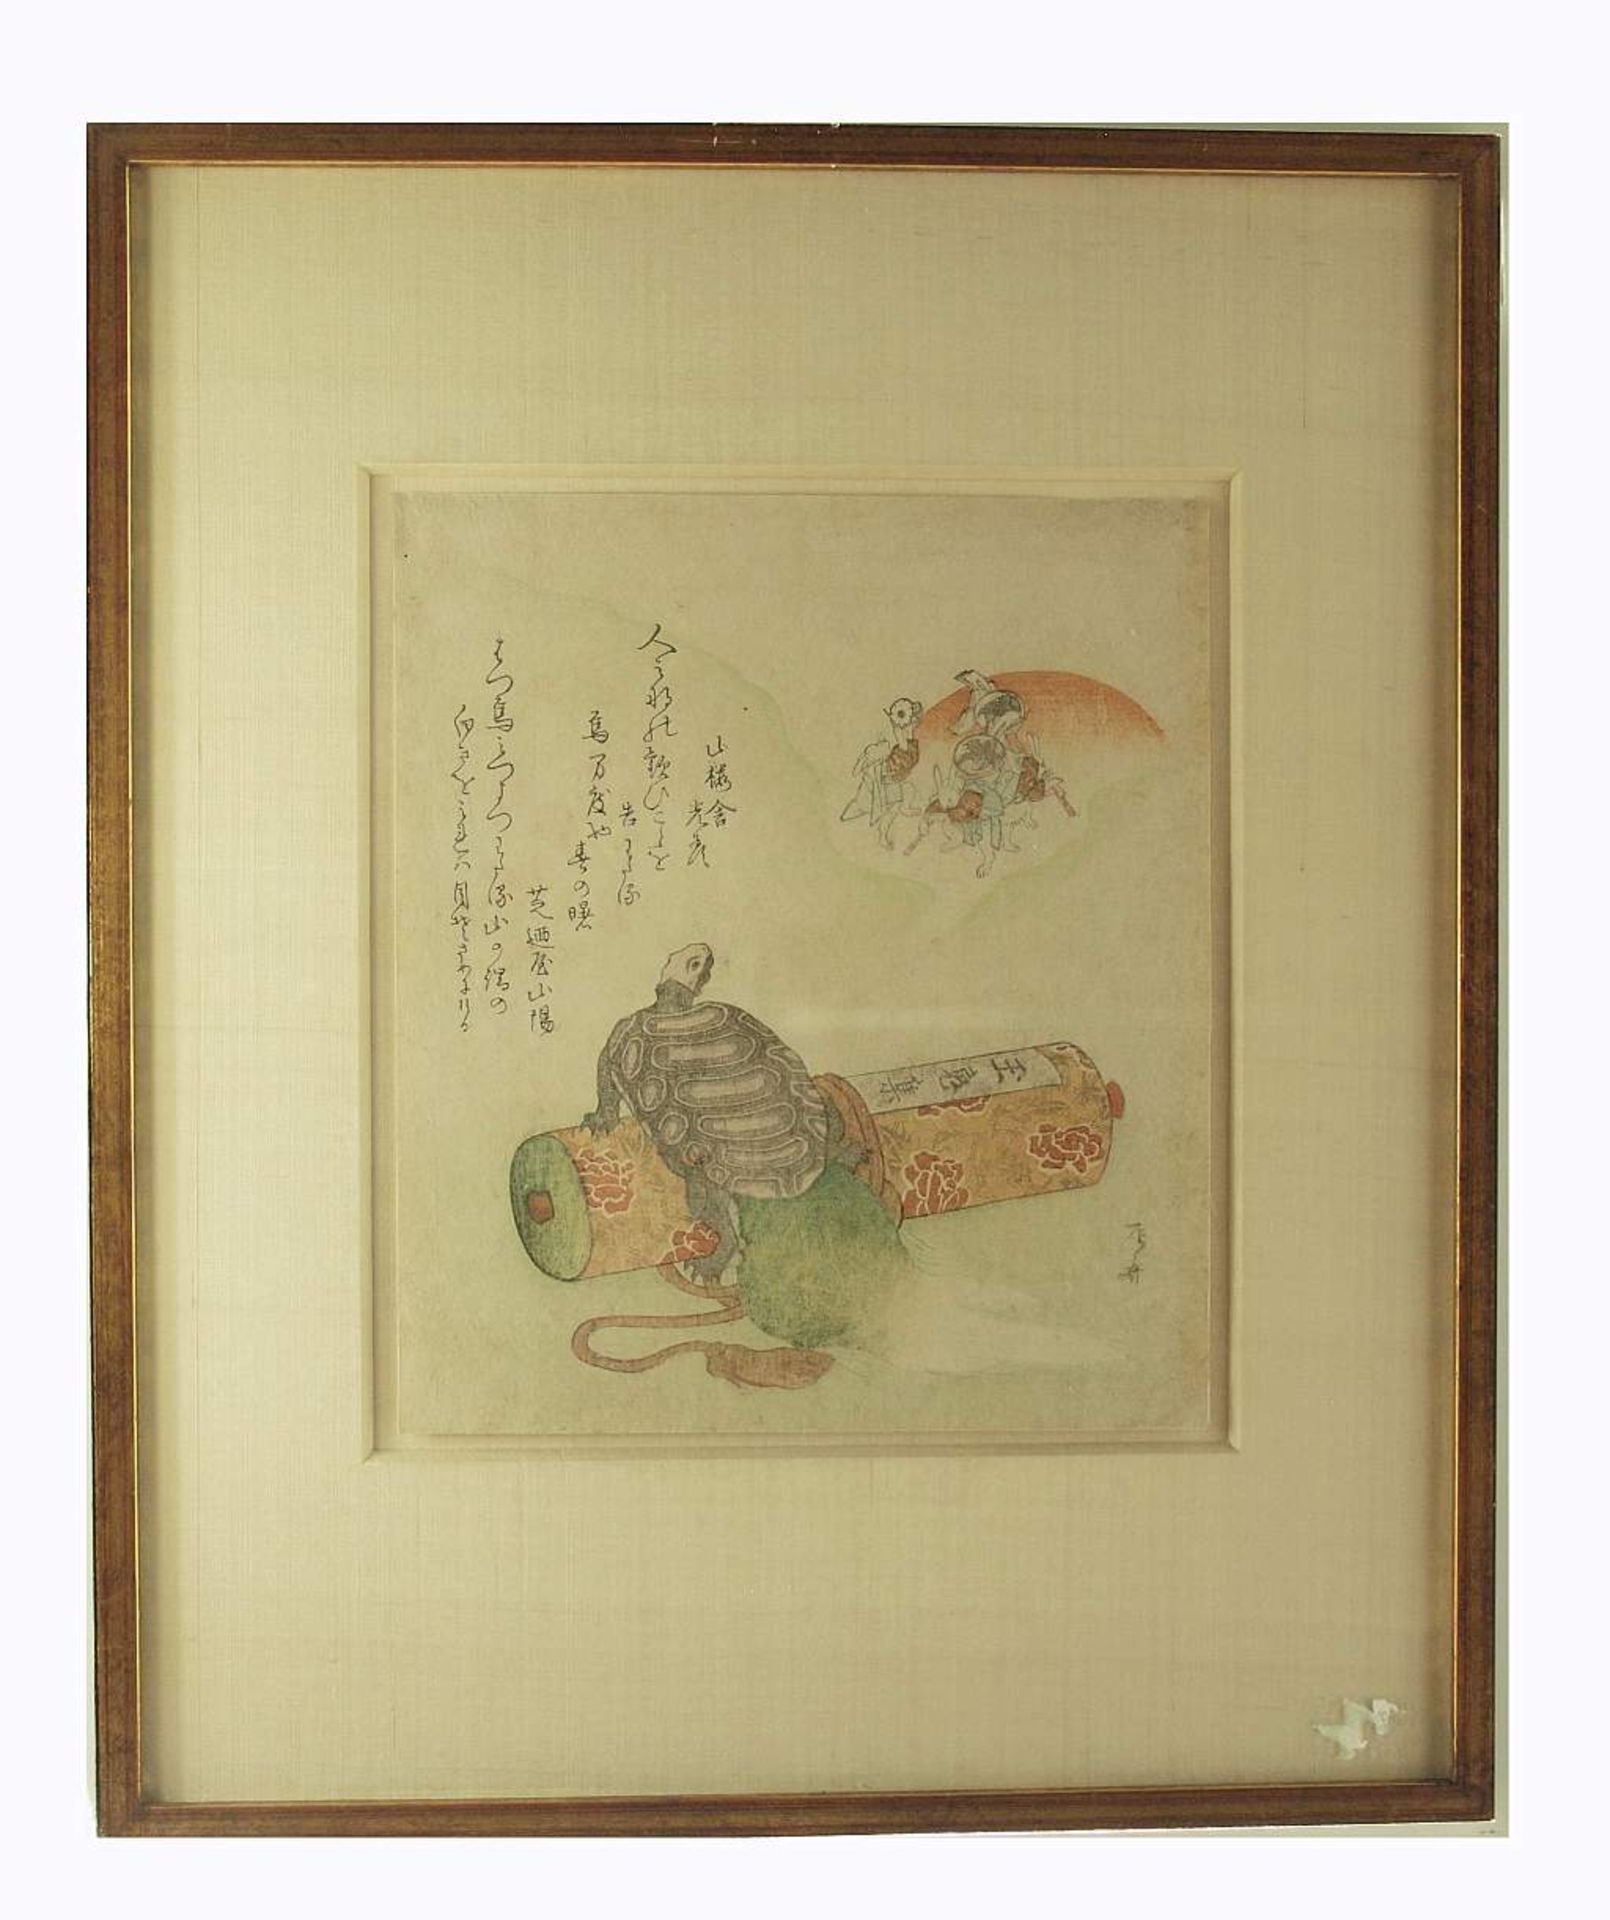 Glückwunschblatt. Japanischer Farbholzschnitt. SHINSAI, Ryuryukyo (tätig 1799 - 1823), - Bild 3 aus 7